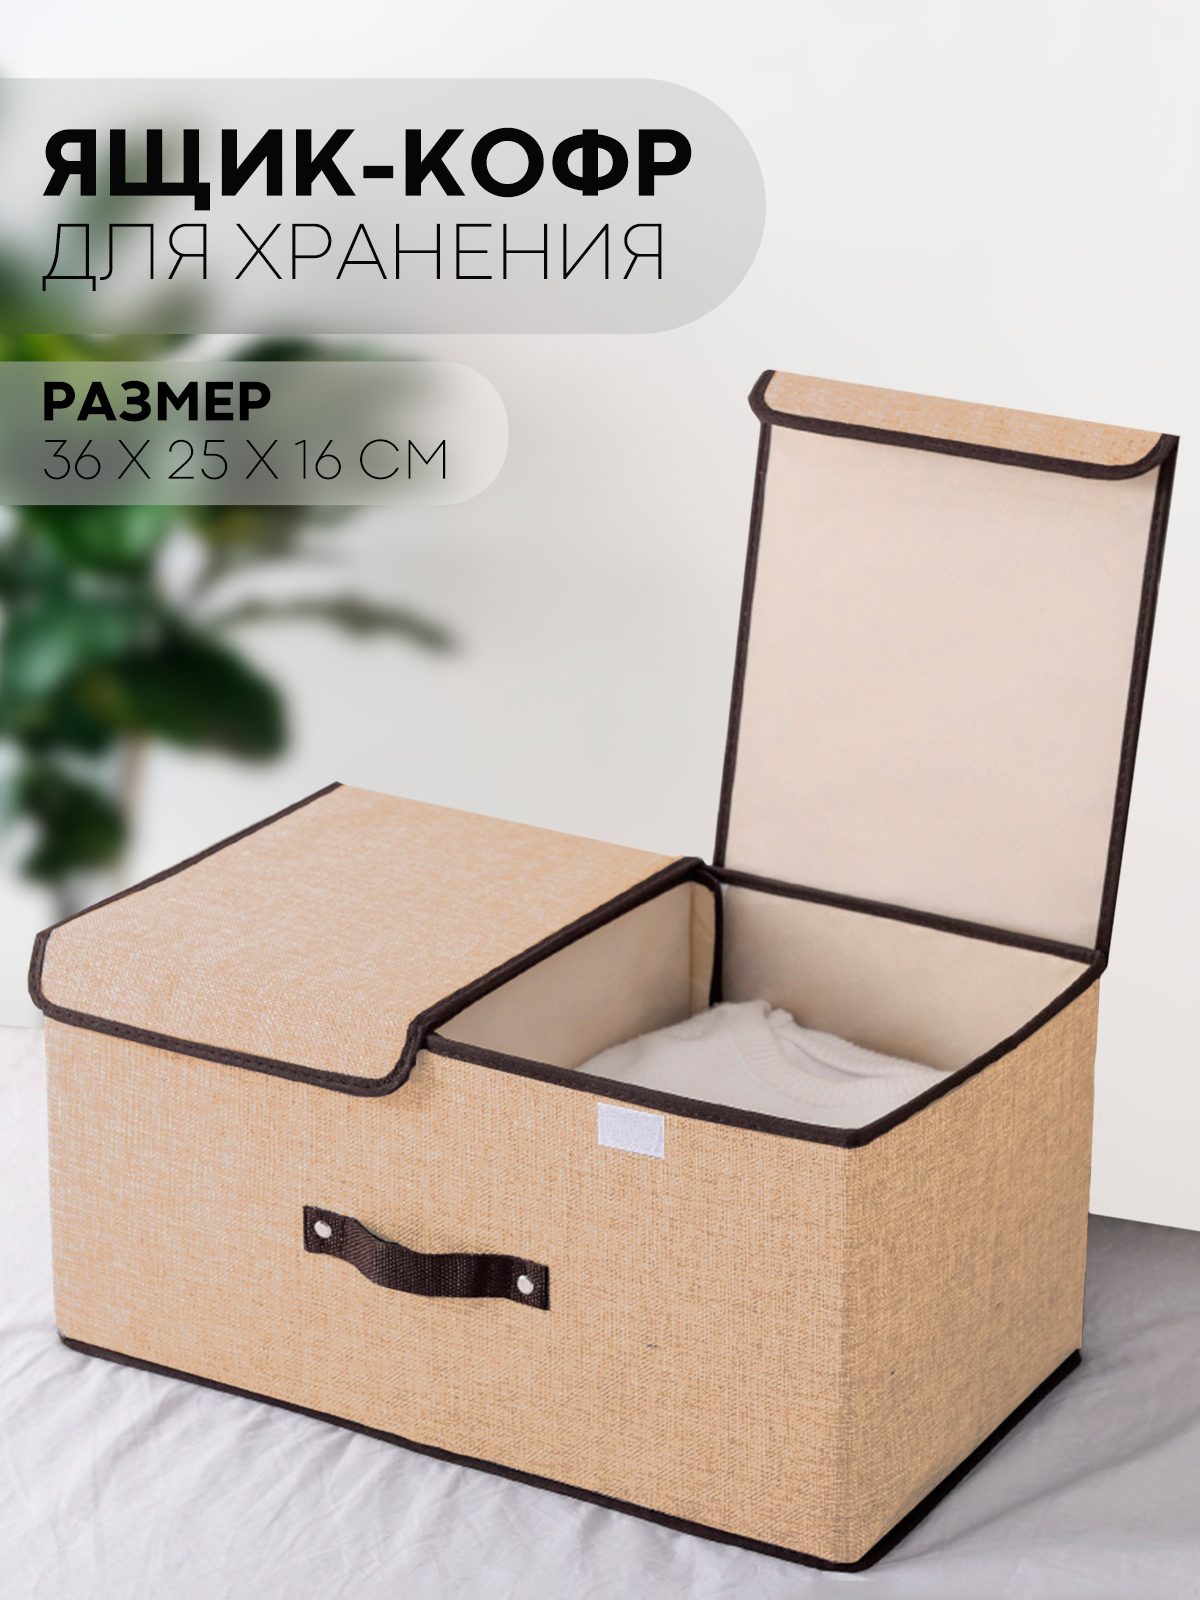 Как купить кофры для хранения вещей в Москве